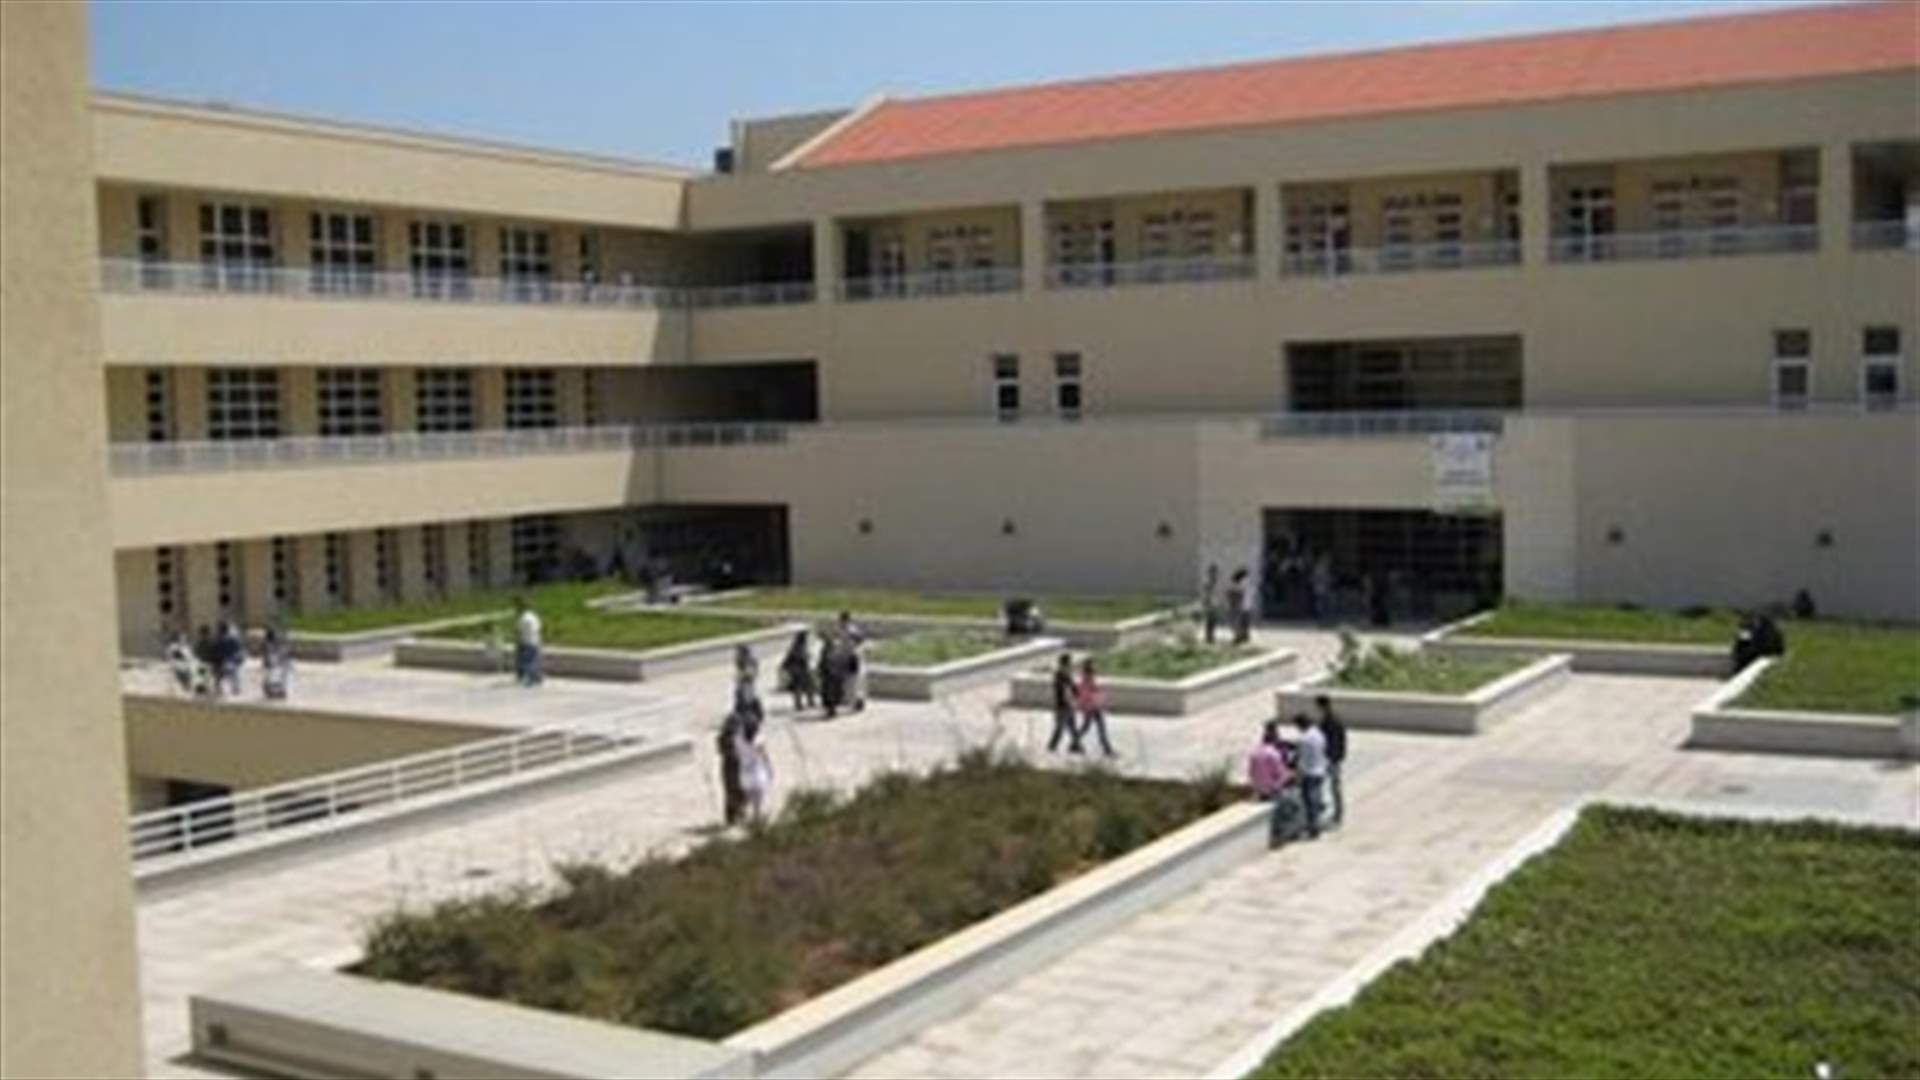 هيئة التعليم العالي تهنئ الفائزين فانتخابات رابطة الأساتذة المتفرغين في الجامعة اللبنانية